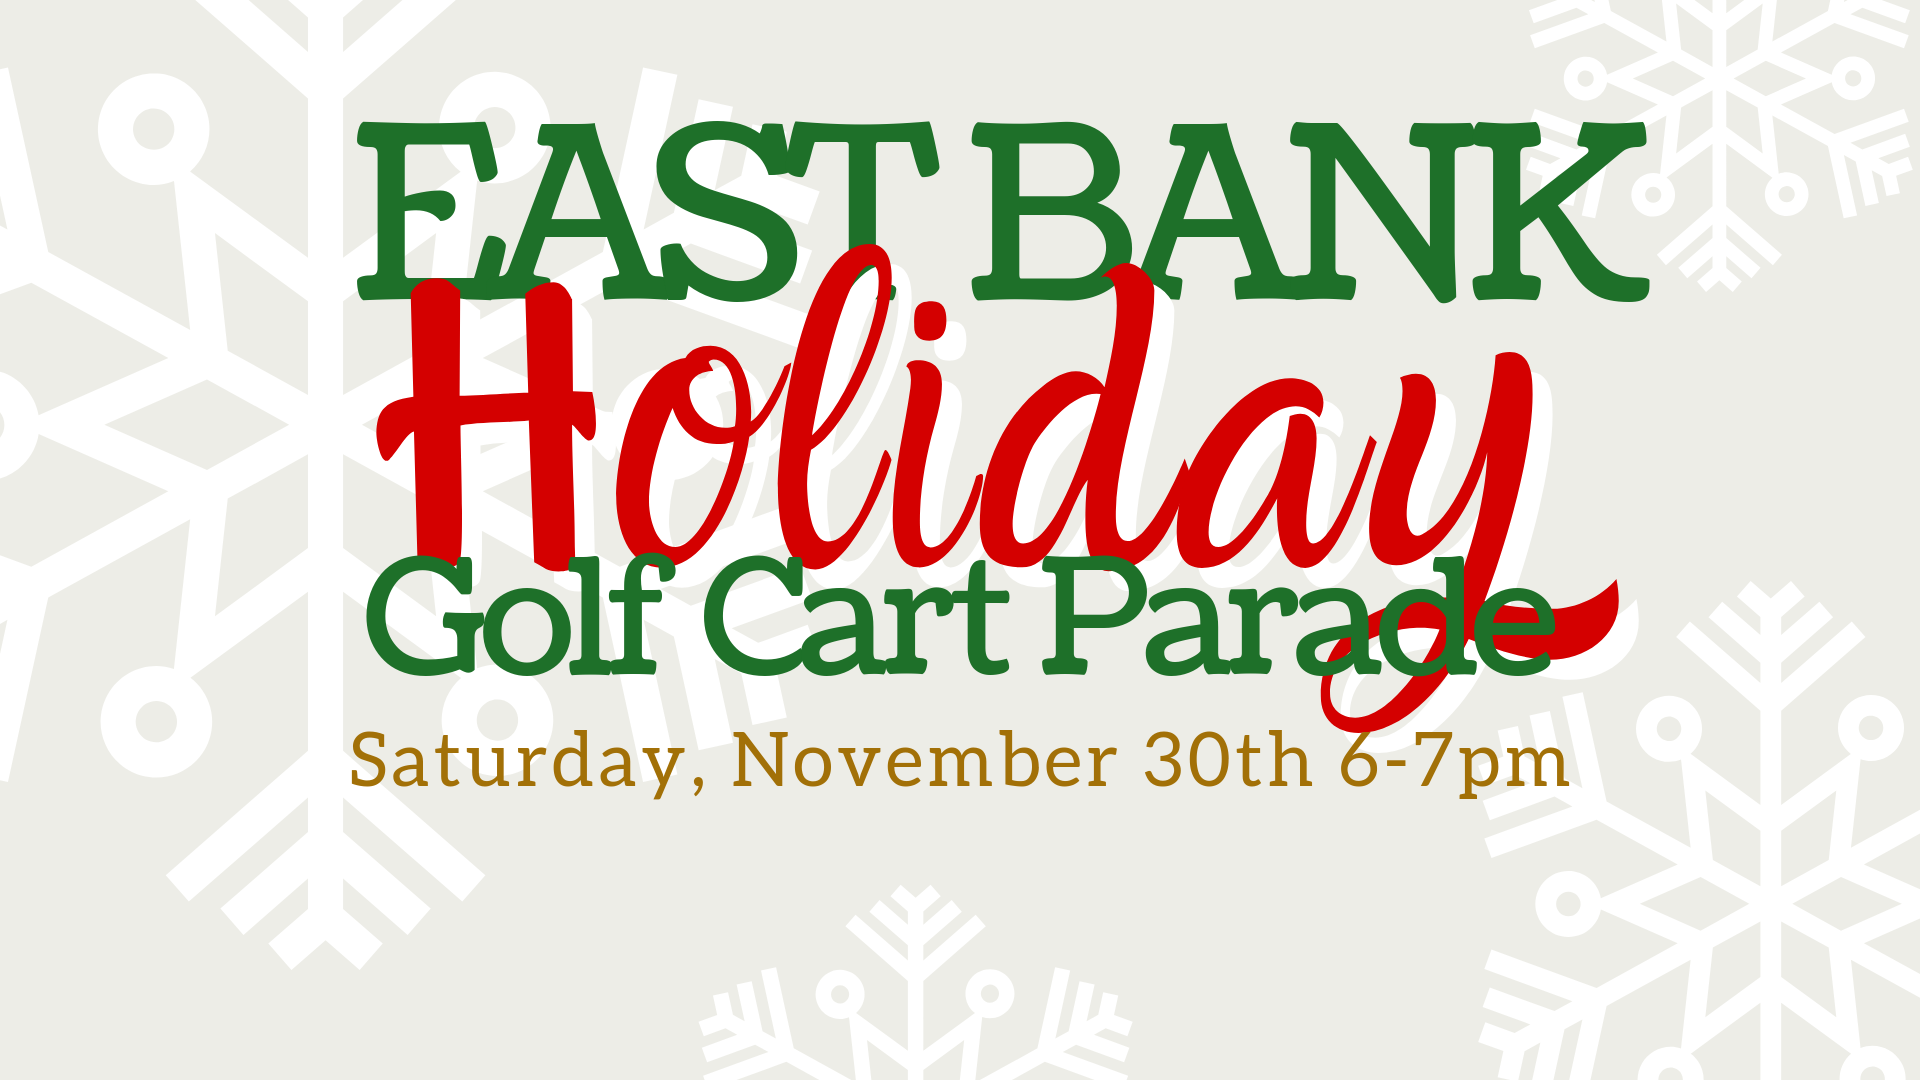 East Bank Golf Cart Parade